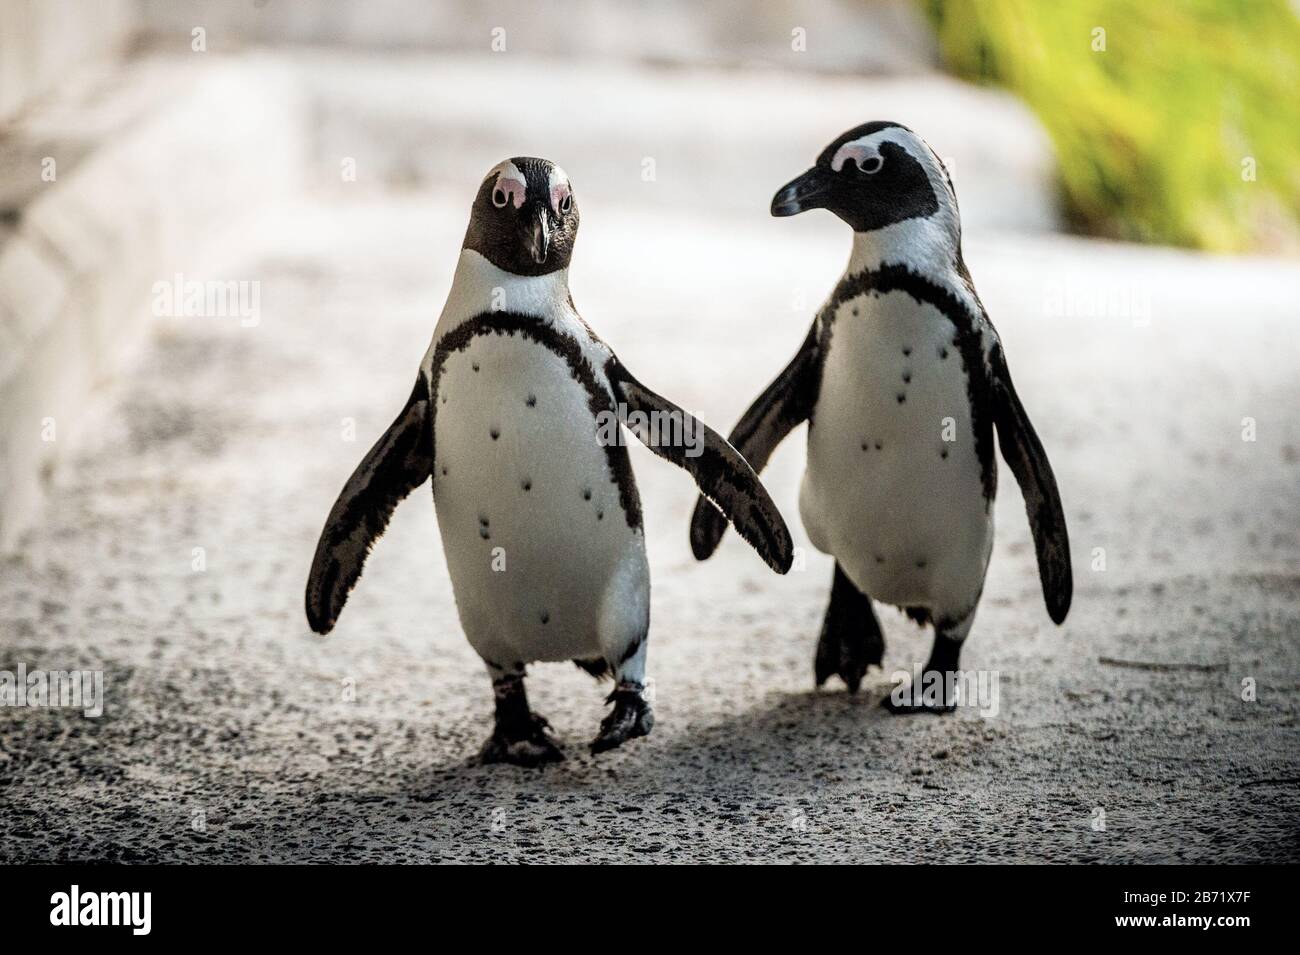 Afrikanische Pinguine. Afrikanischer Pinguin auch als Jackasspinguin, Schwarzfußpinguin, bekannt. Wissenschaftlicher Name: Spheniscus demersus. Felsbrocken. Aussagesicht Stockfoto